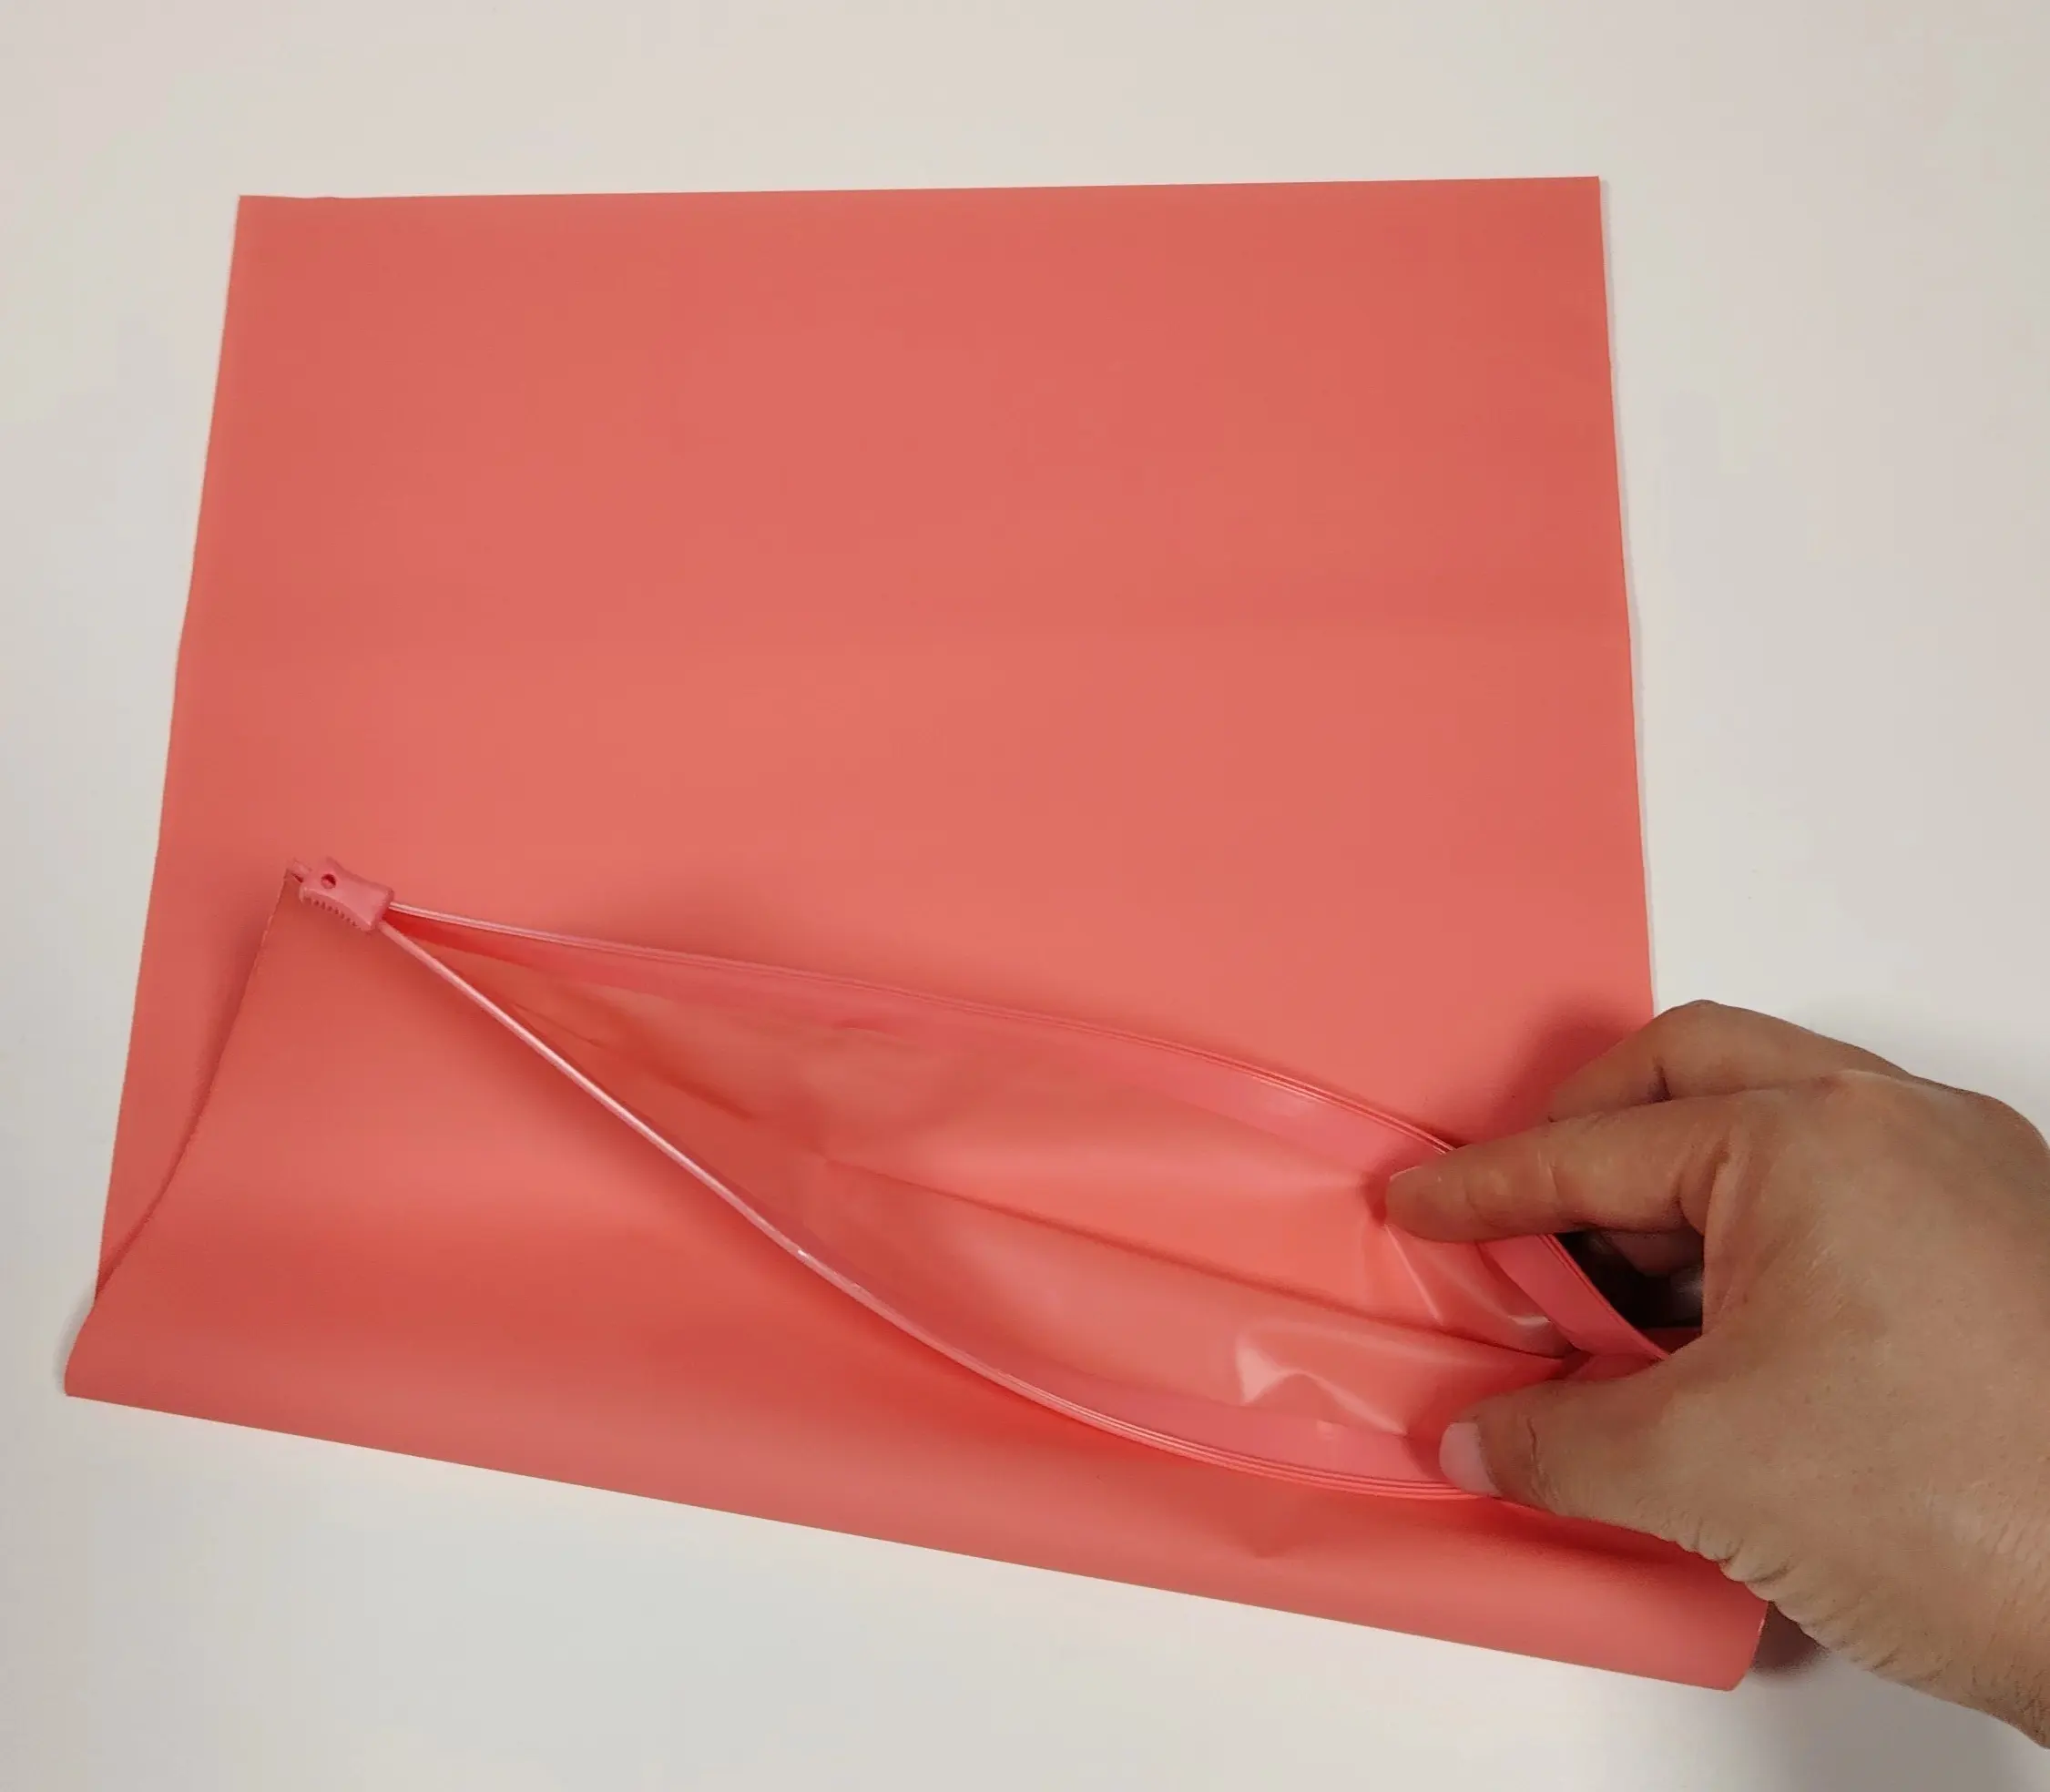 Pembe zip plastik poşetler geri dönüştürülebilir plastik poşetler özel plastik torba logo özel renkler